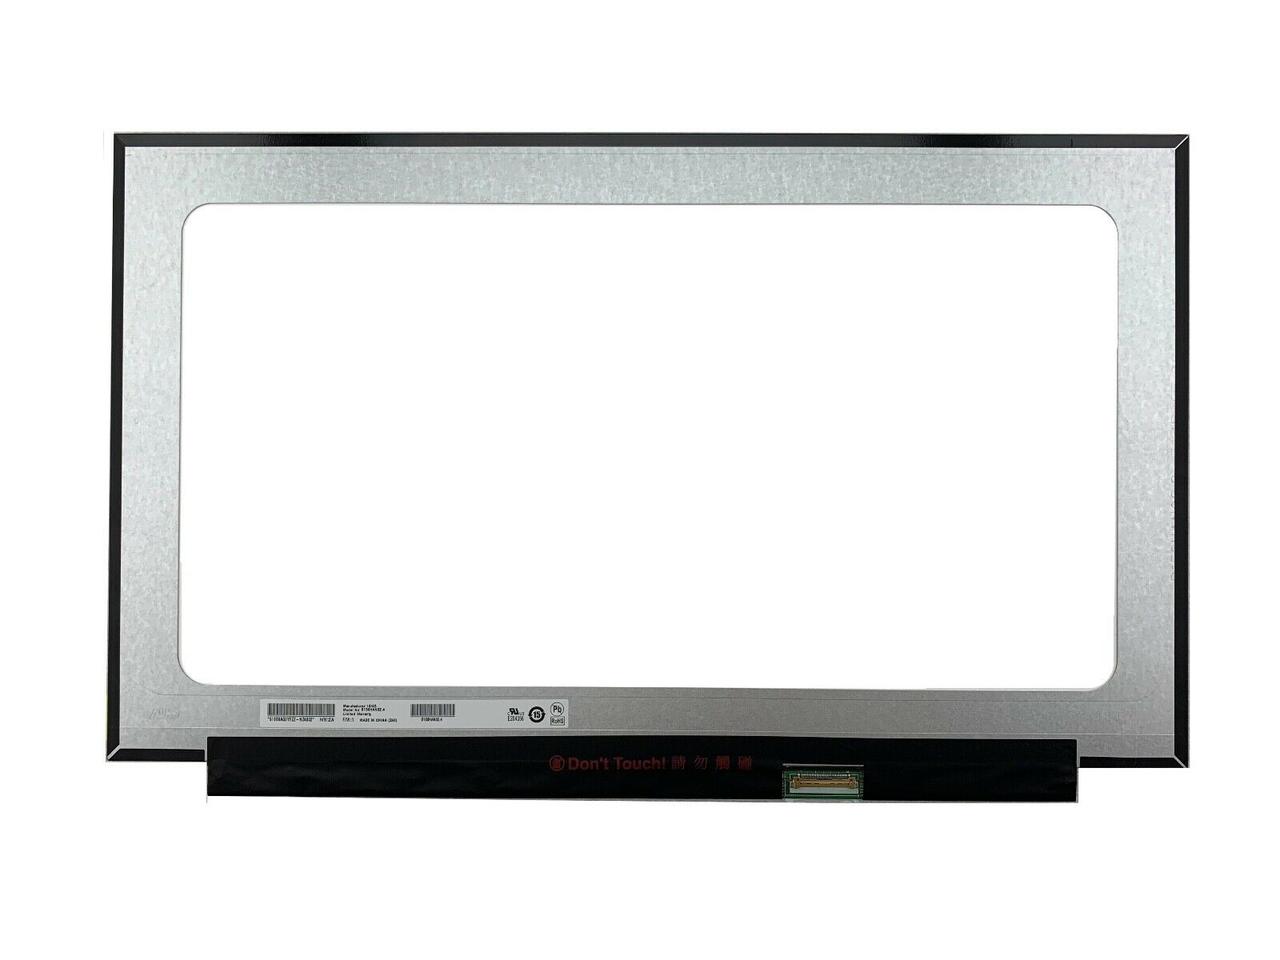 Матрица (экран) для ноутбука LG LP156WF9 SP L9 15,6, 30 pin Slim, 1920x1080, IPS, без креплений (350.7 мм)